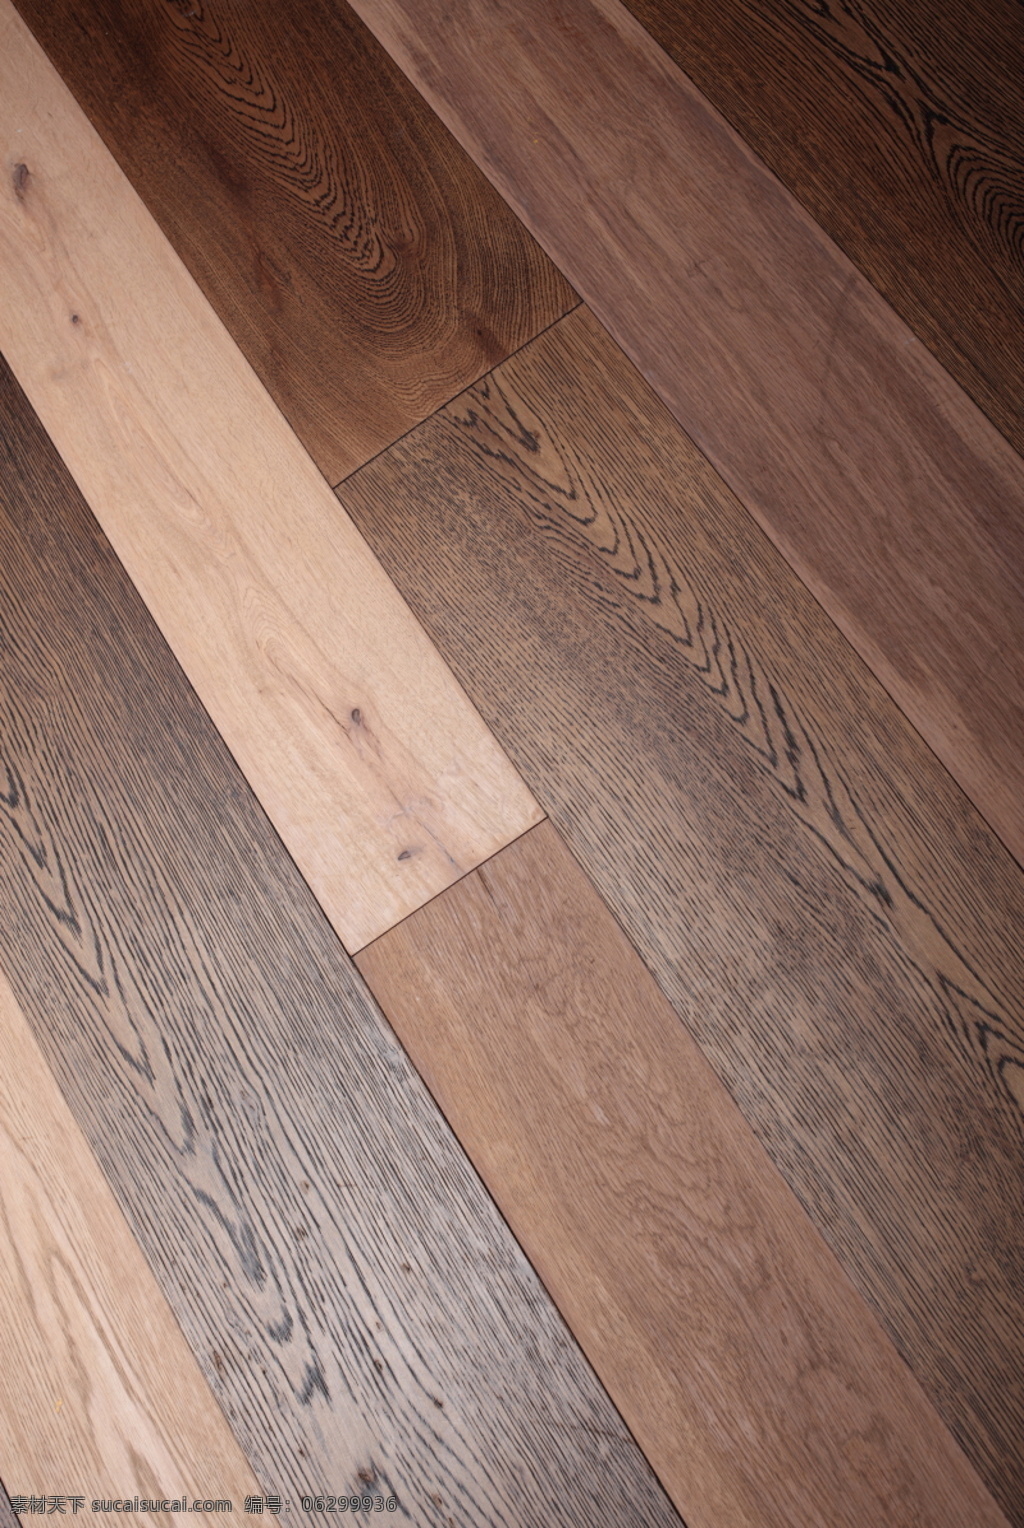 地板 材质 库 深 浅 3d材质库 3d贴图 地板素材 地板材质库 地板精选 专业地板 真实 木纹 地板块 大 分辨率 高清木地板 3d 贴图